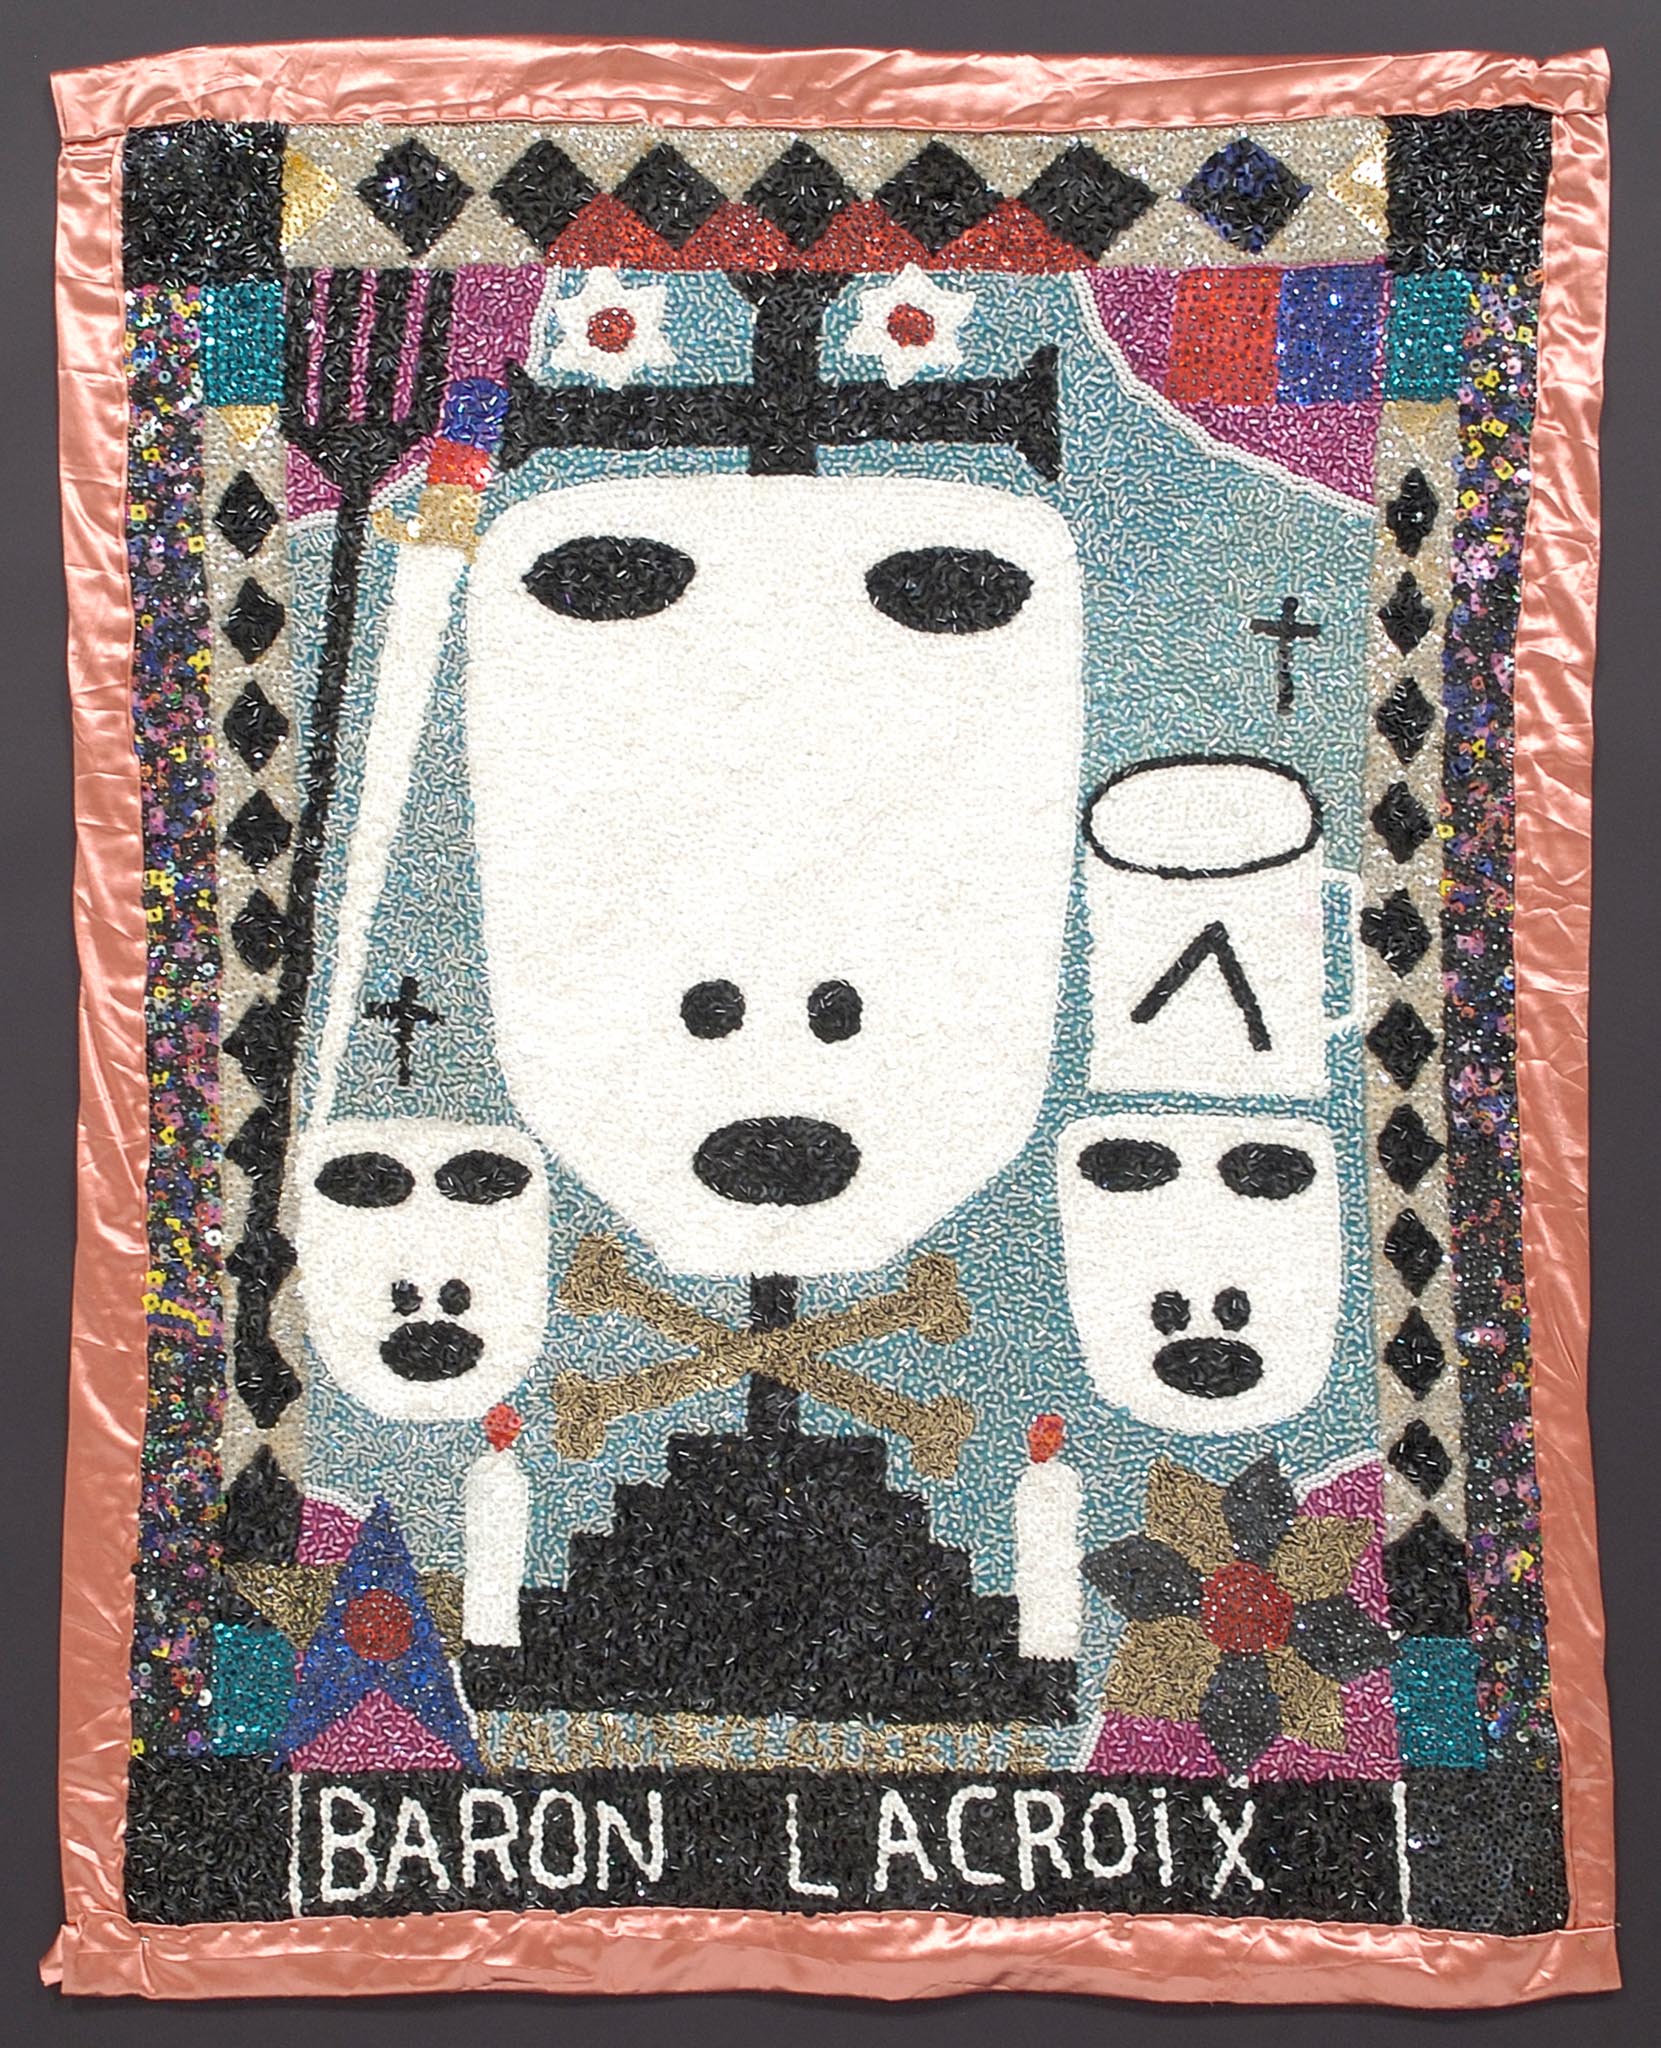 Baron LaCroix,1990s